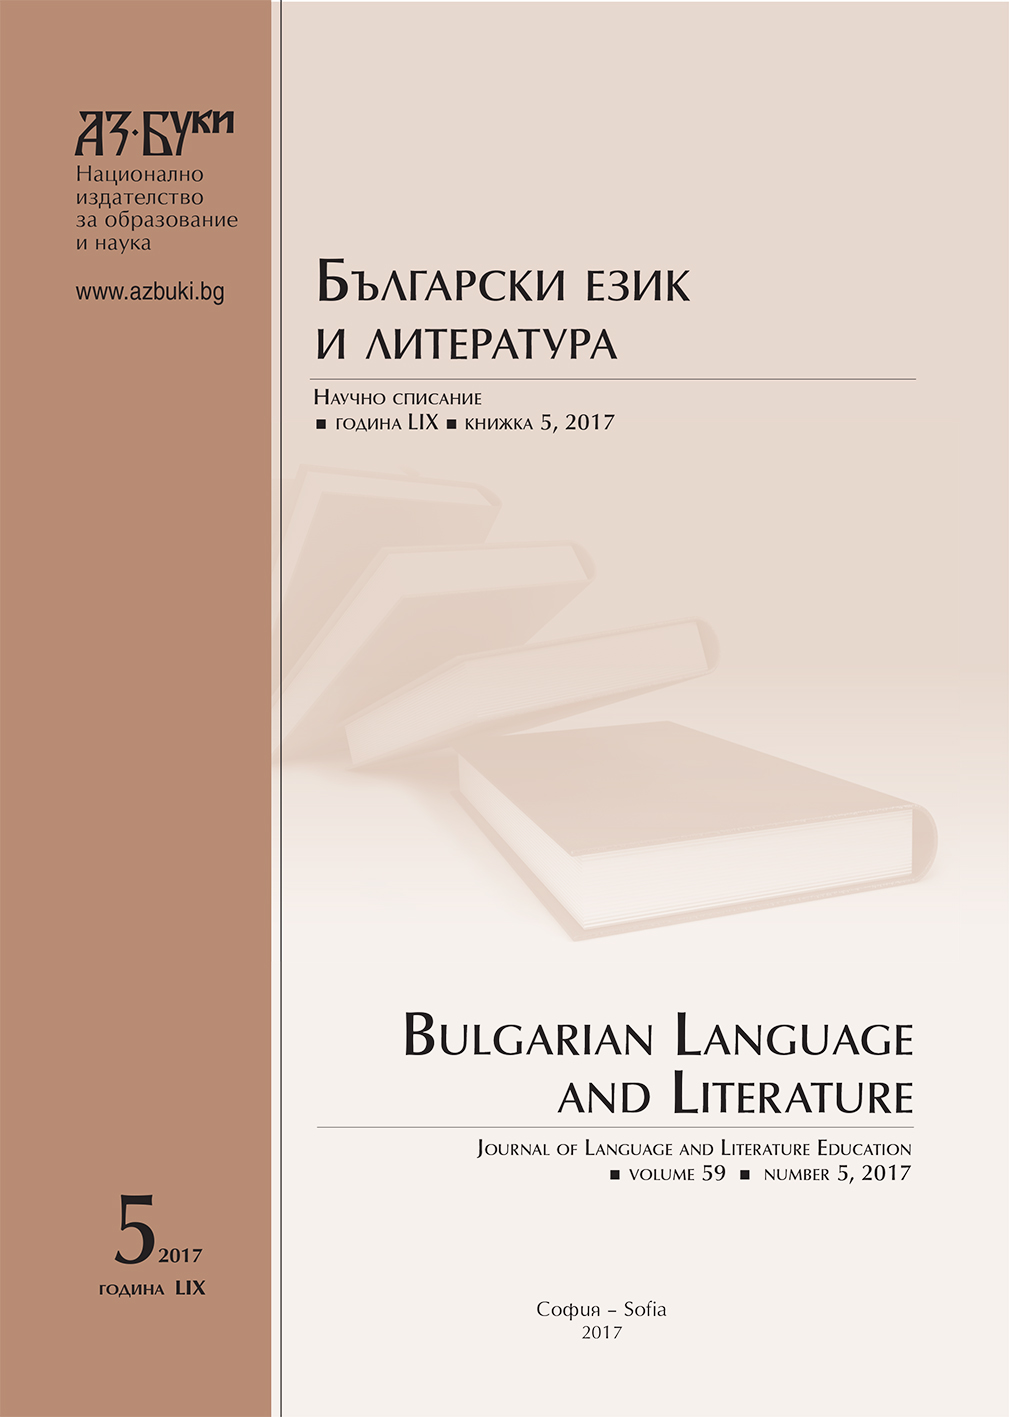 Между Библията и старобългарската литература с подкрепата на информационните технологии